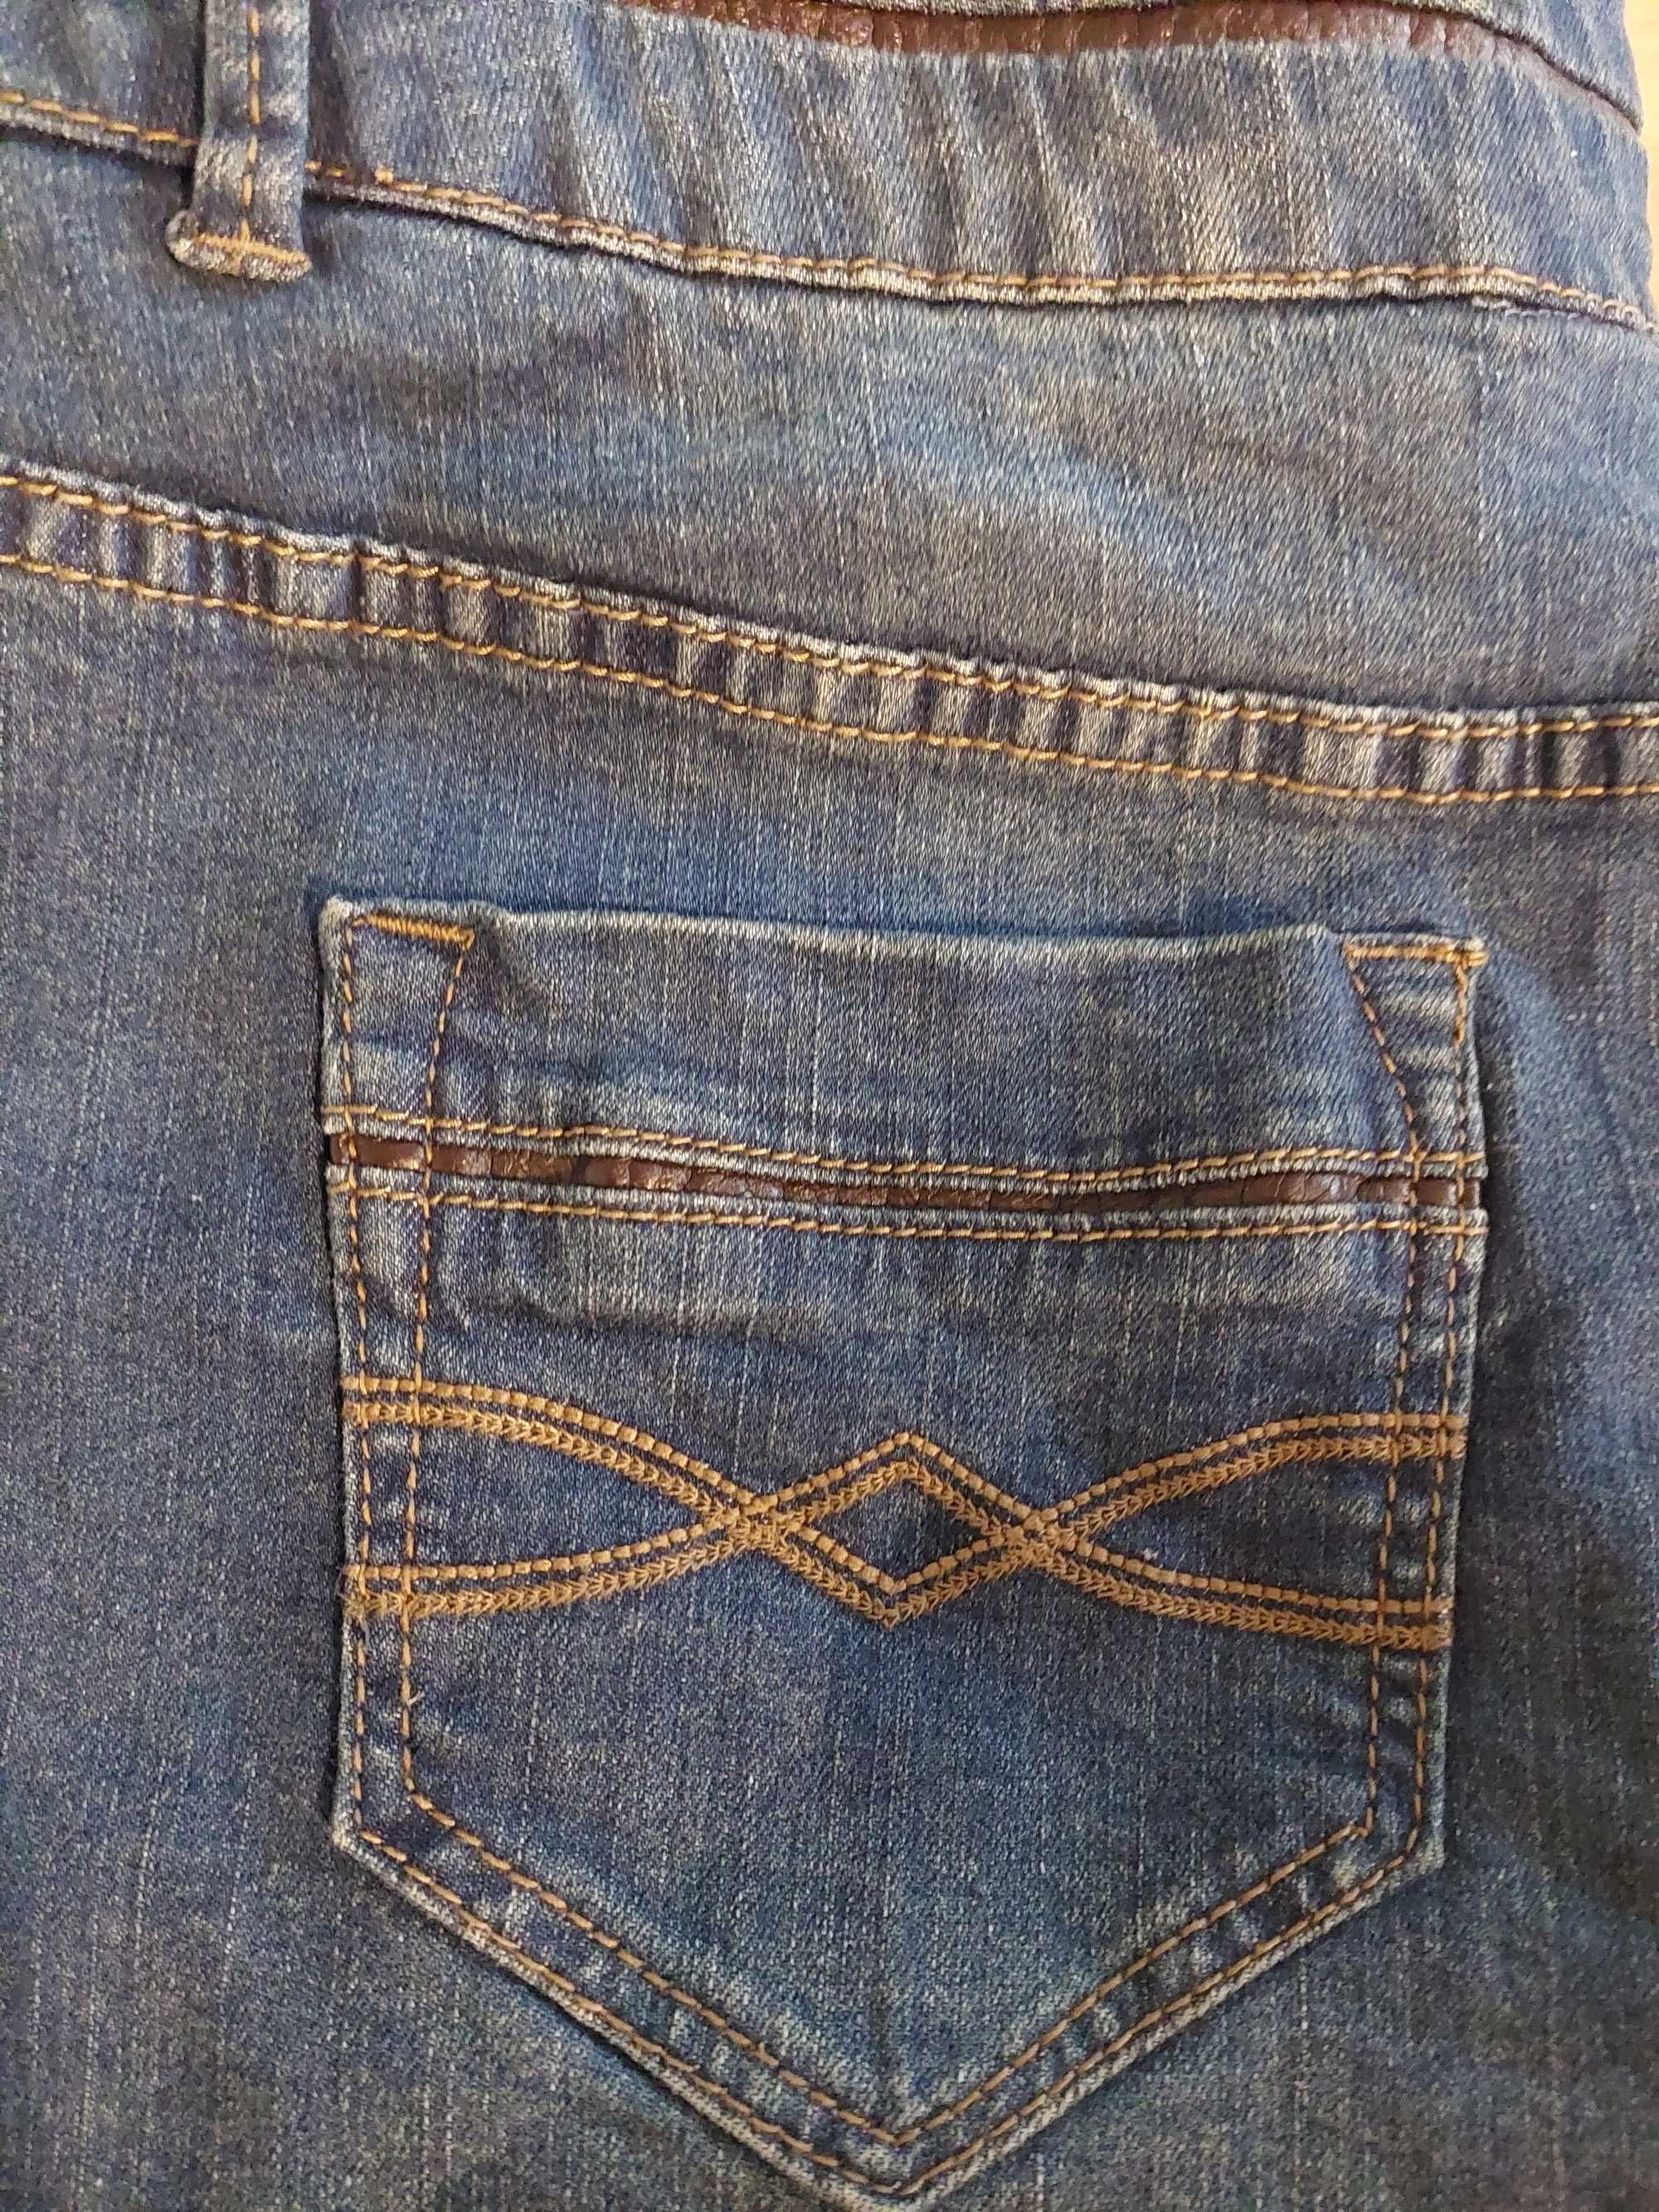 Spudnica Camaieu jeansowa rozmiar 42